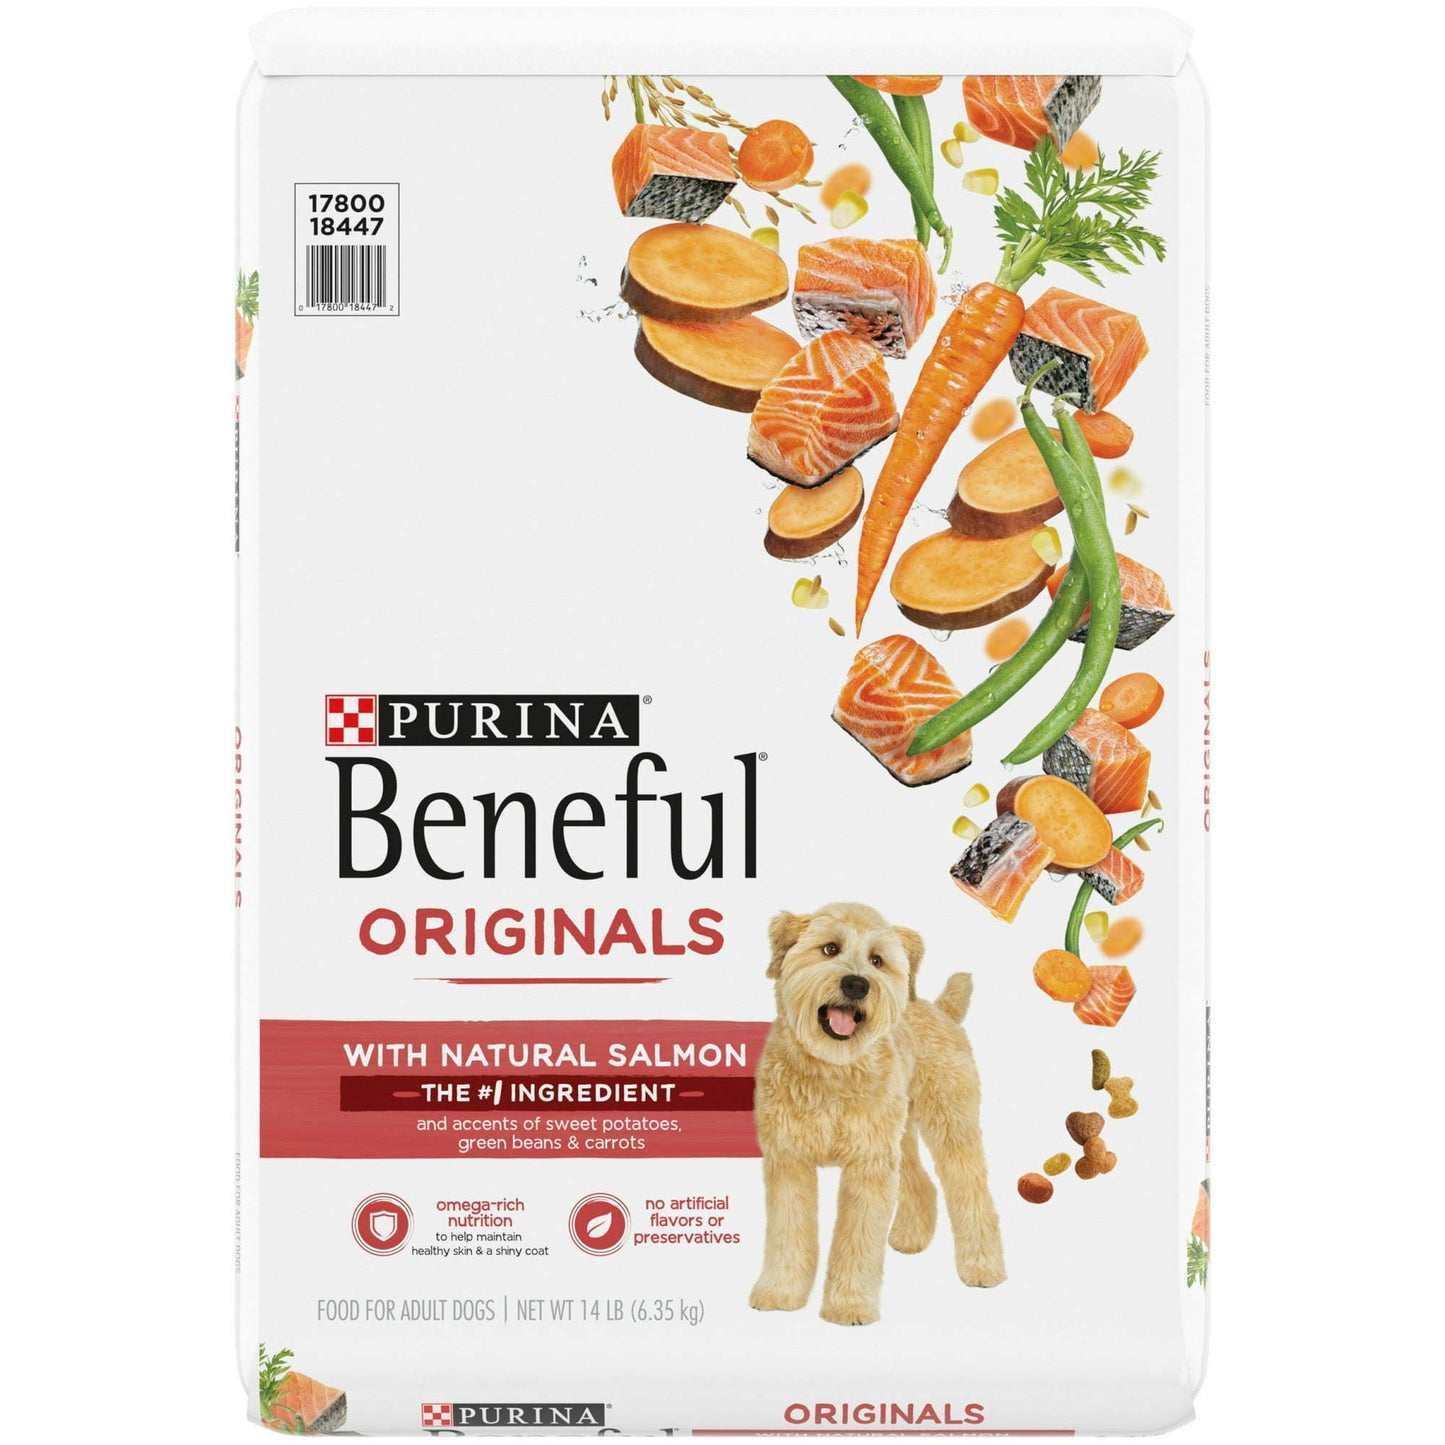 Purina Beneful Originals Natural Salmon Dry Dog Food 14 lb Bag